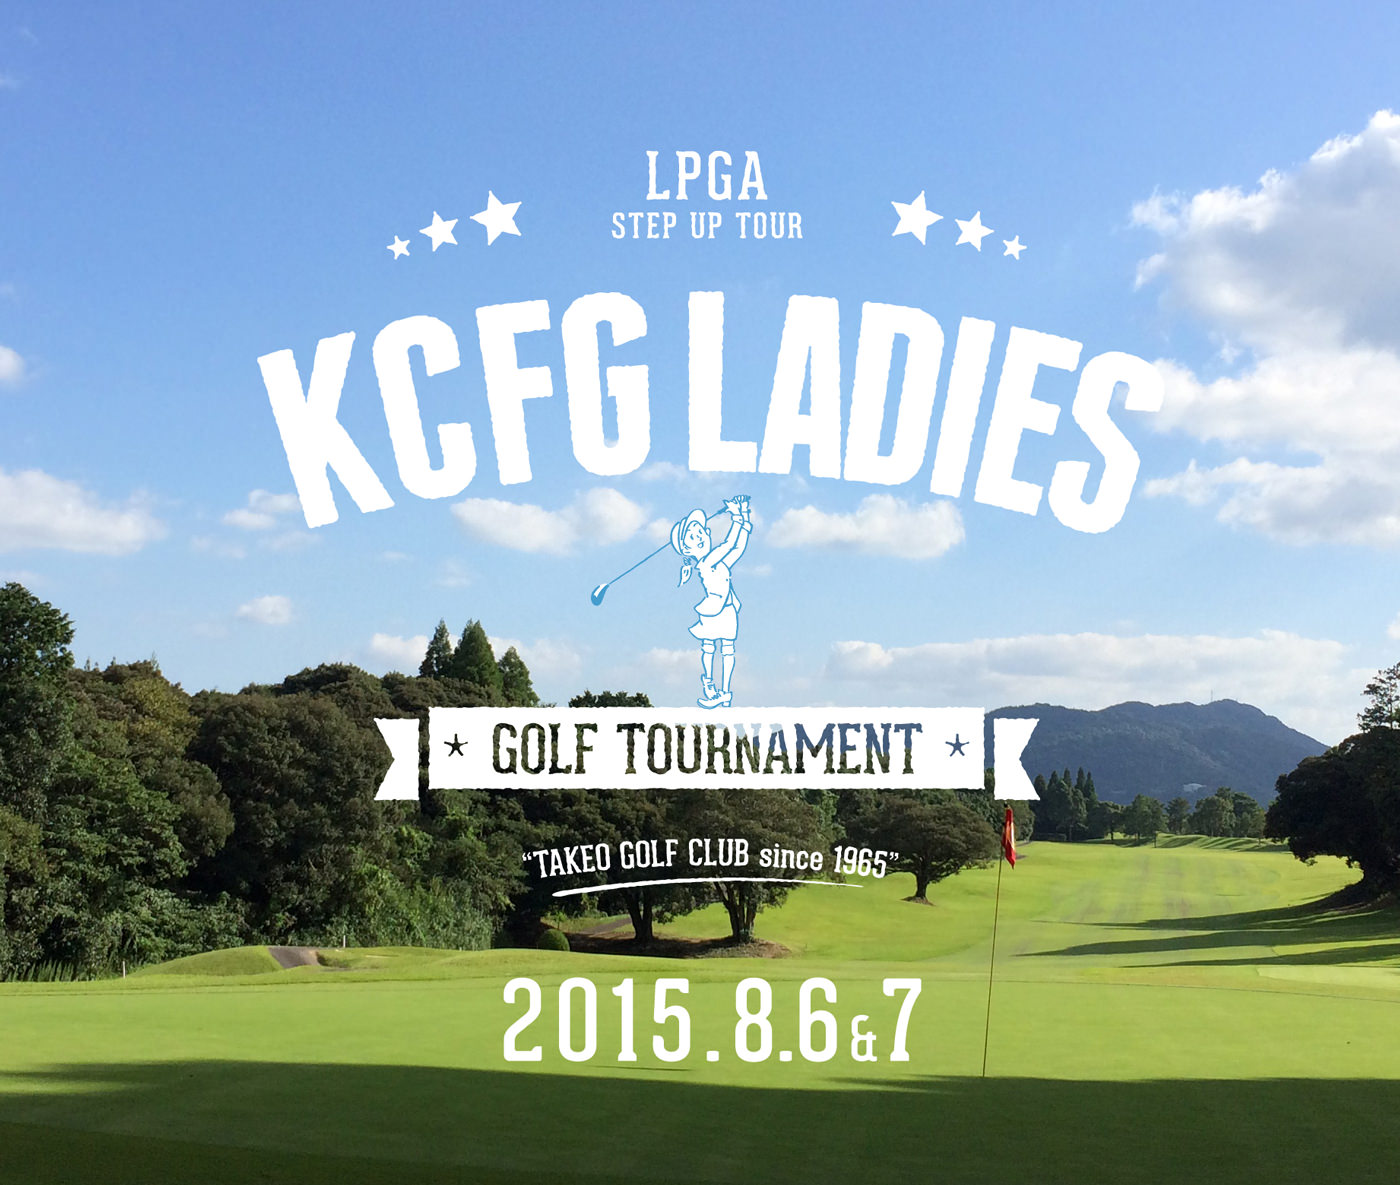 LPGAステップ･アップ･ツア－「KCFGレディ－スゴルフト－ナメント」2015